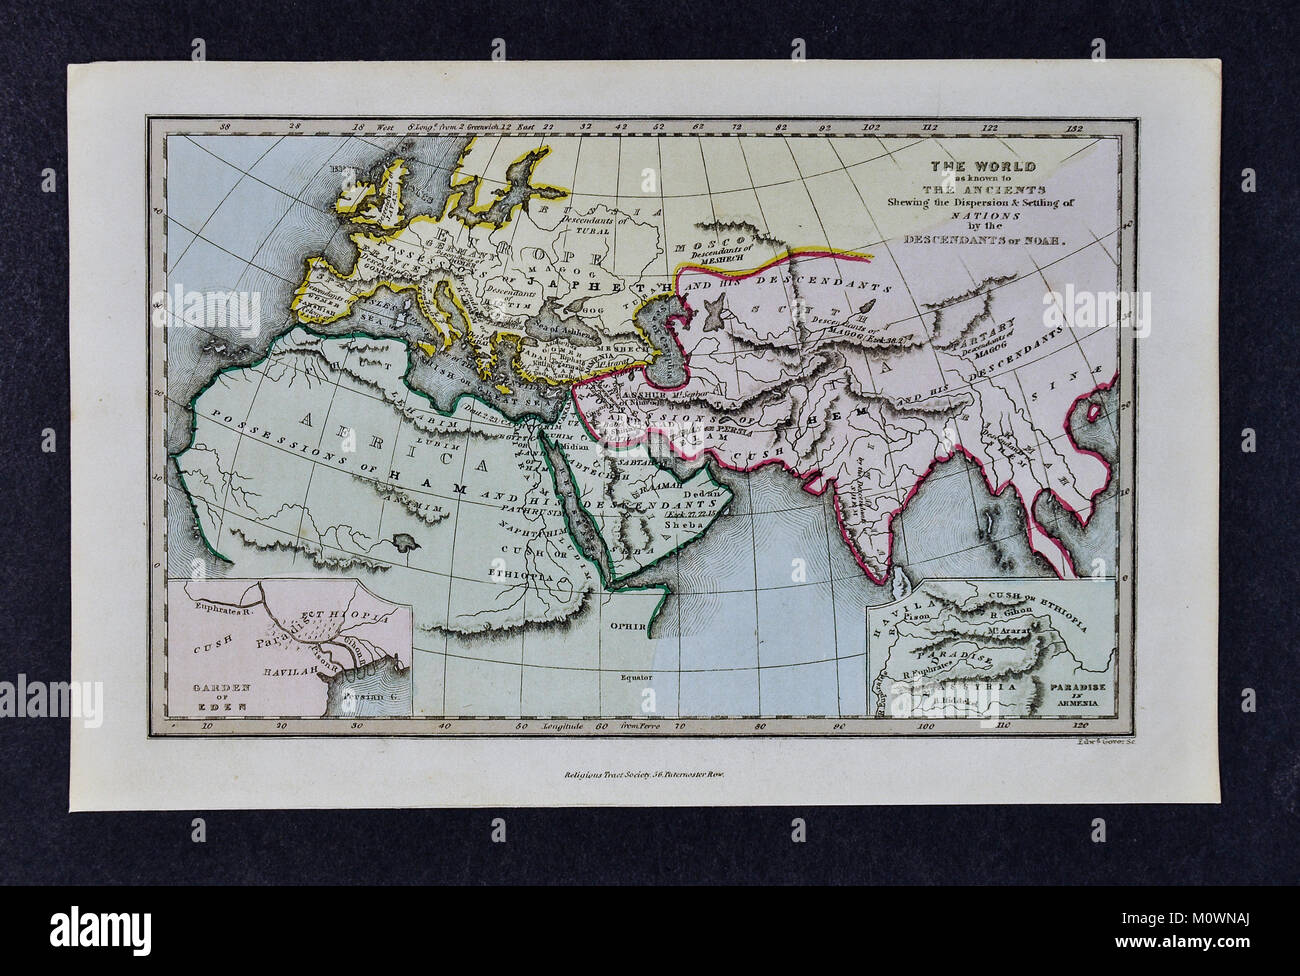 1799 Bibel Traktatgesellschaft Karte - die Welt, wie in der Antike, in dem die Ausbreitung und Ansiedlung von Nationen durch die Nachkommen Noahs bekannt Stockfoto